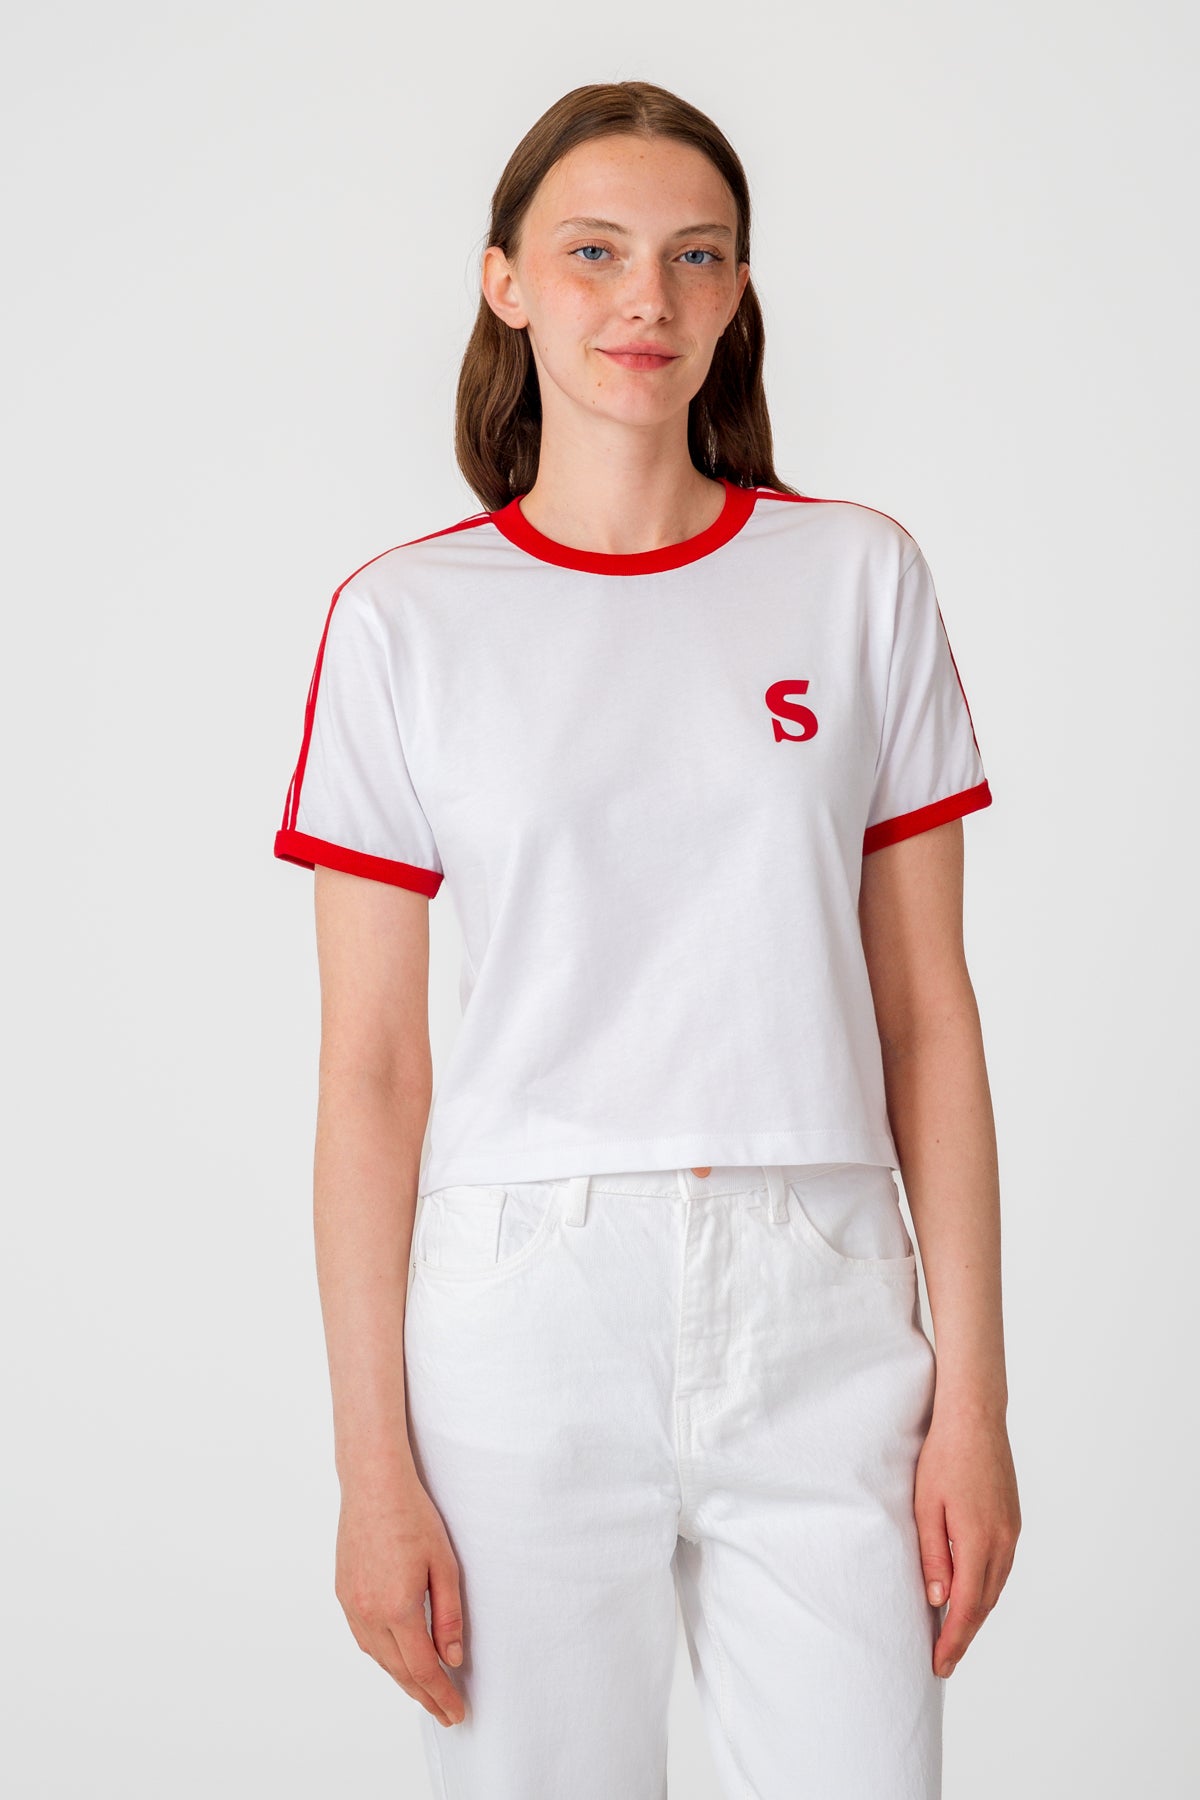 Socrates Logo Supreme Kadın T-shirt - Beyaz